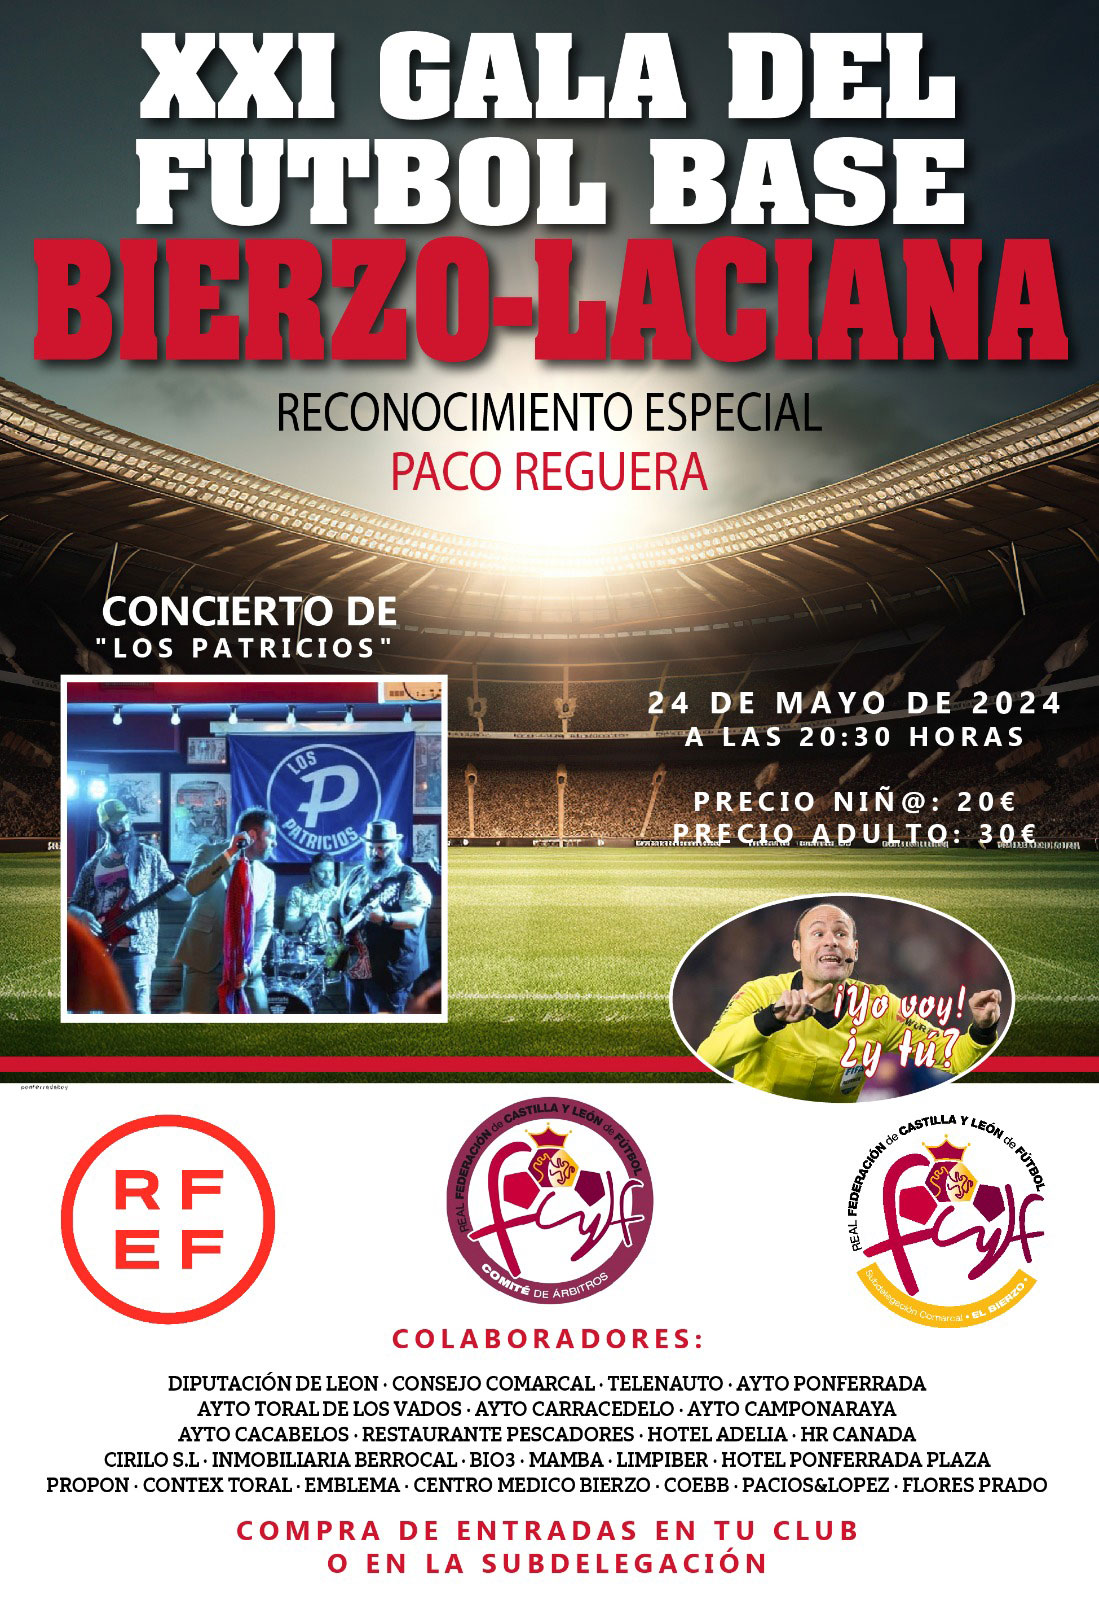 La XXI Gala del fútbol base del Bierzo- Laciana tendrá un reconocimiento especial a Paco Reguera 10